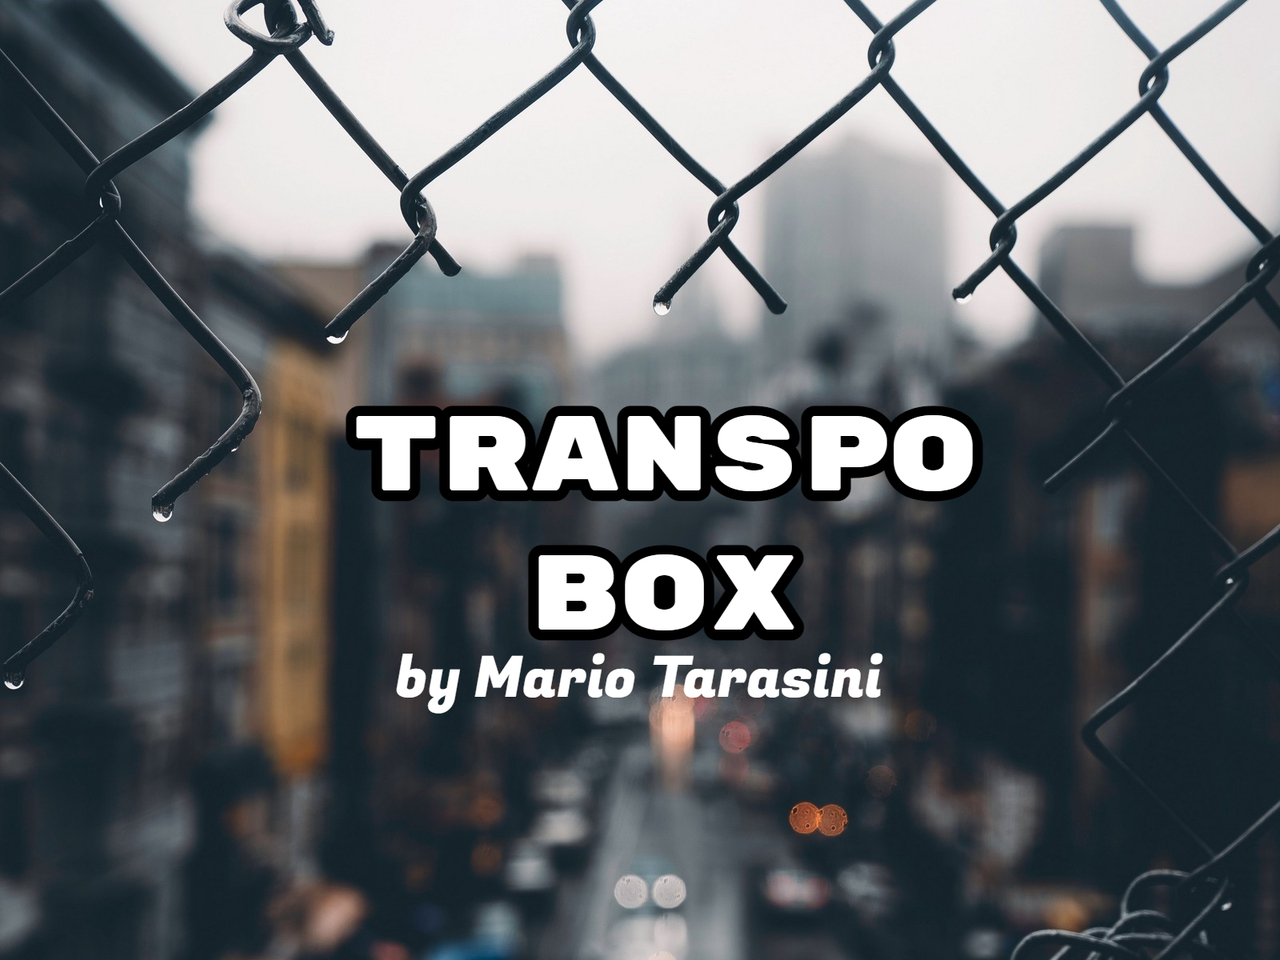 Mario Tarasini - Transpo Box